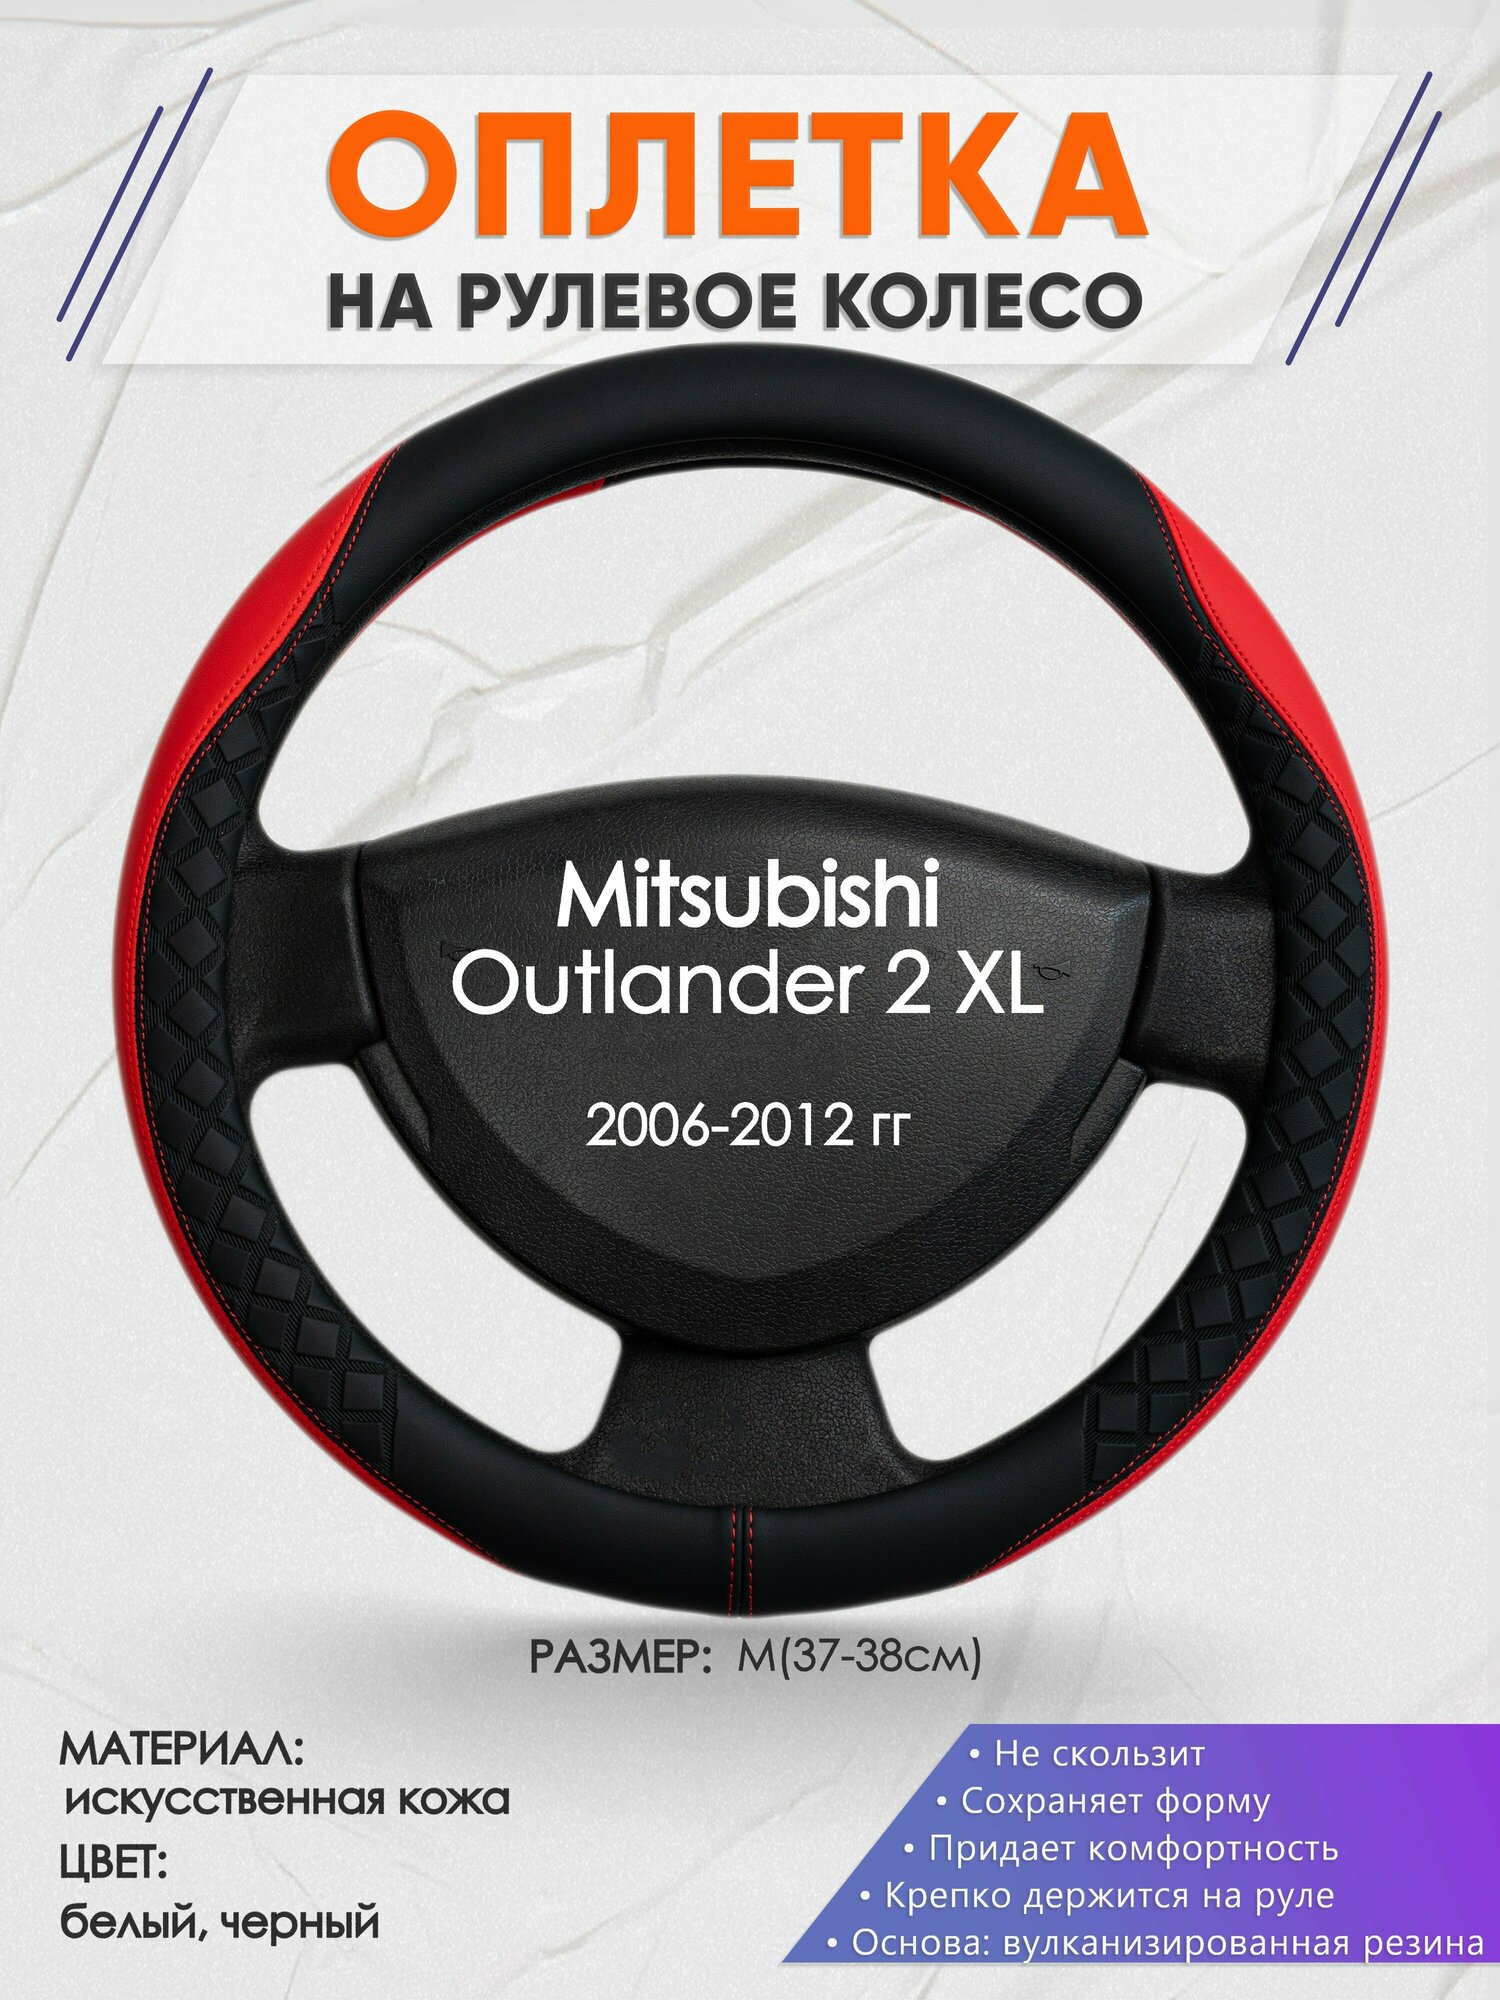 Оплетка на руль для Mitsubishi Outlander 2 XL(Митсубиси Аутлендер 2 хл) 2006-2012 M(37-38см) Искусственная кожа 83